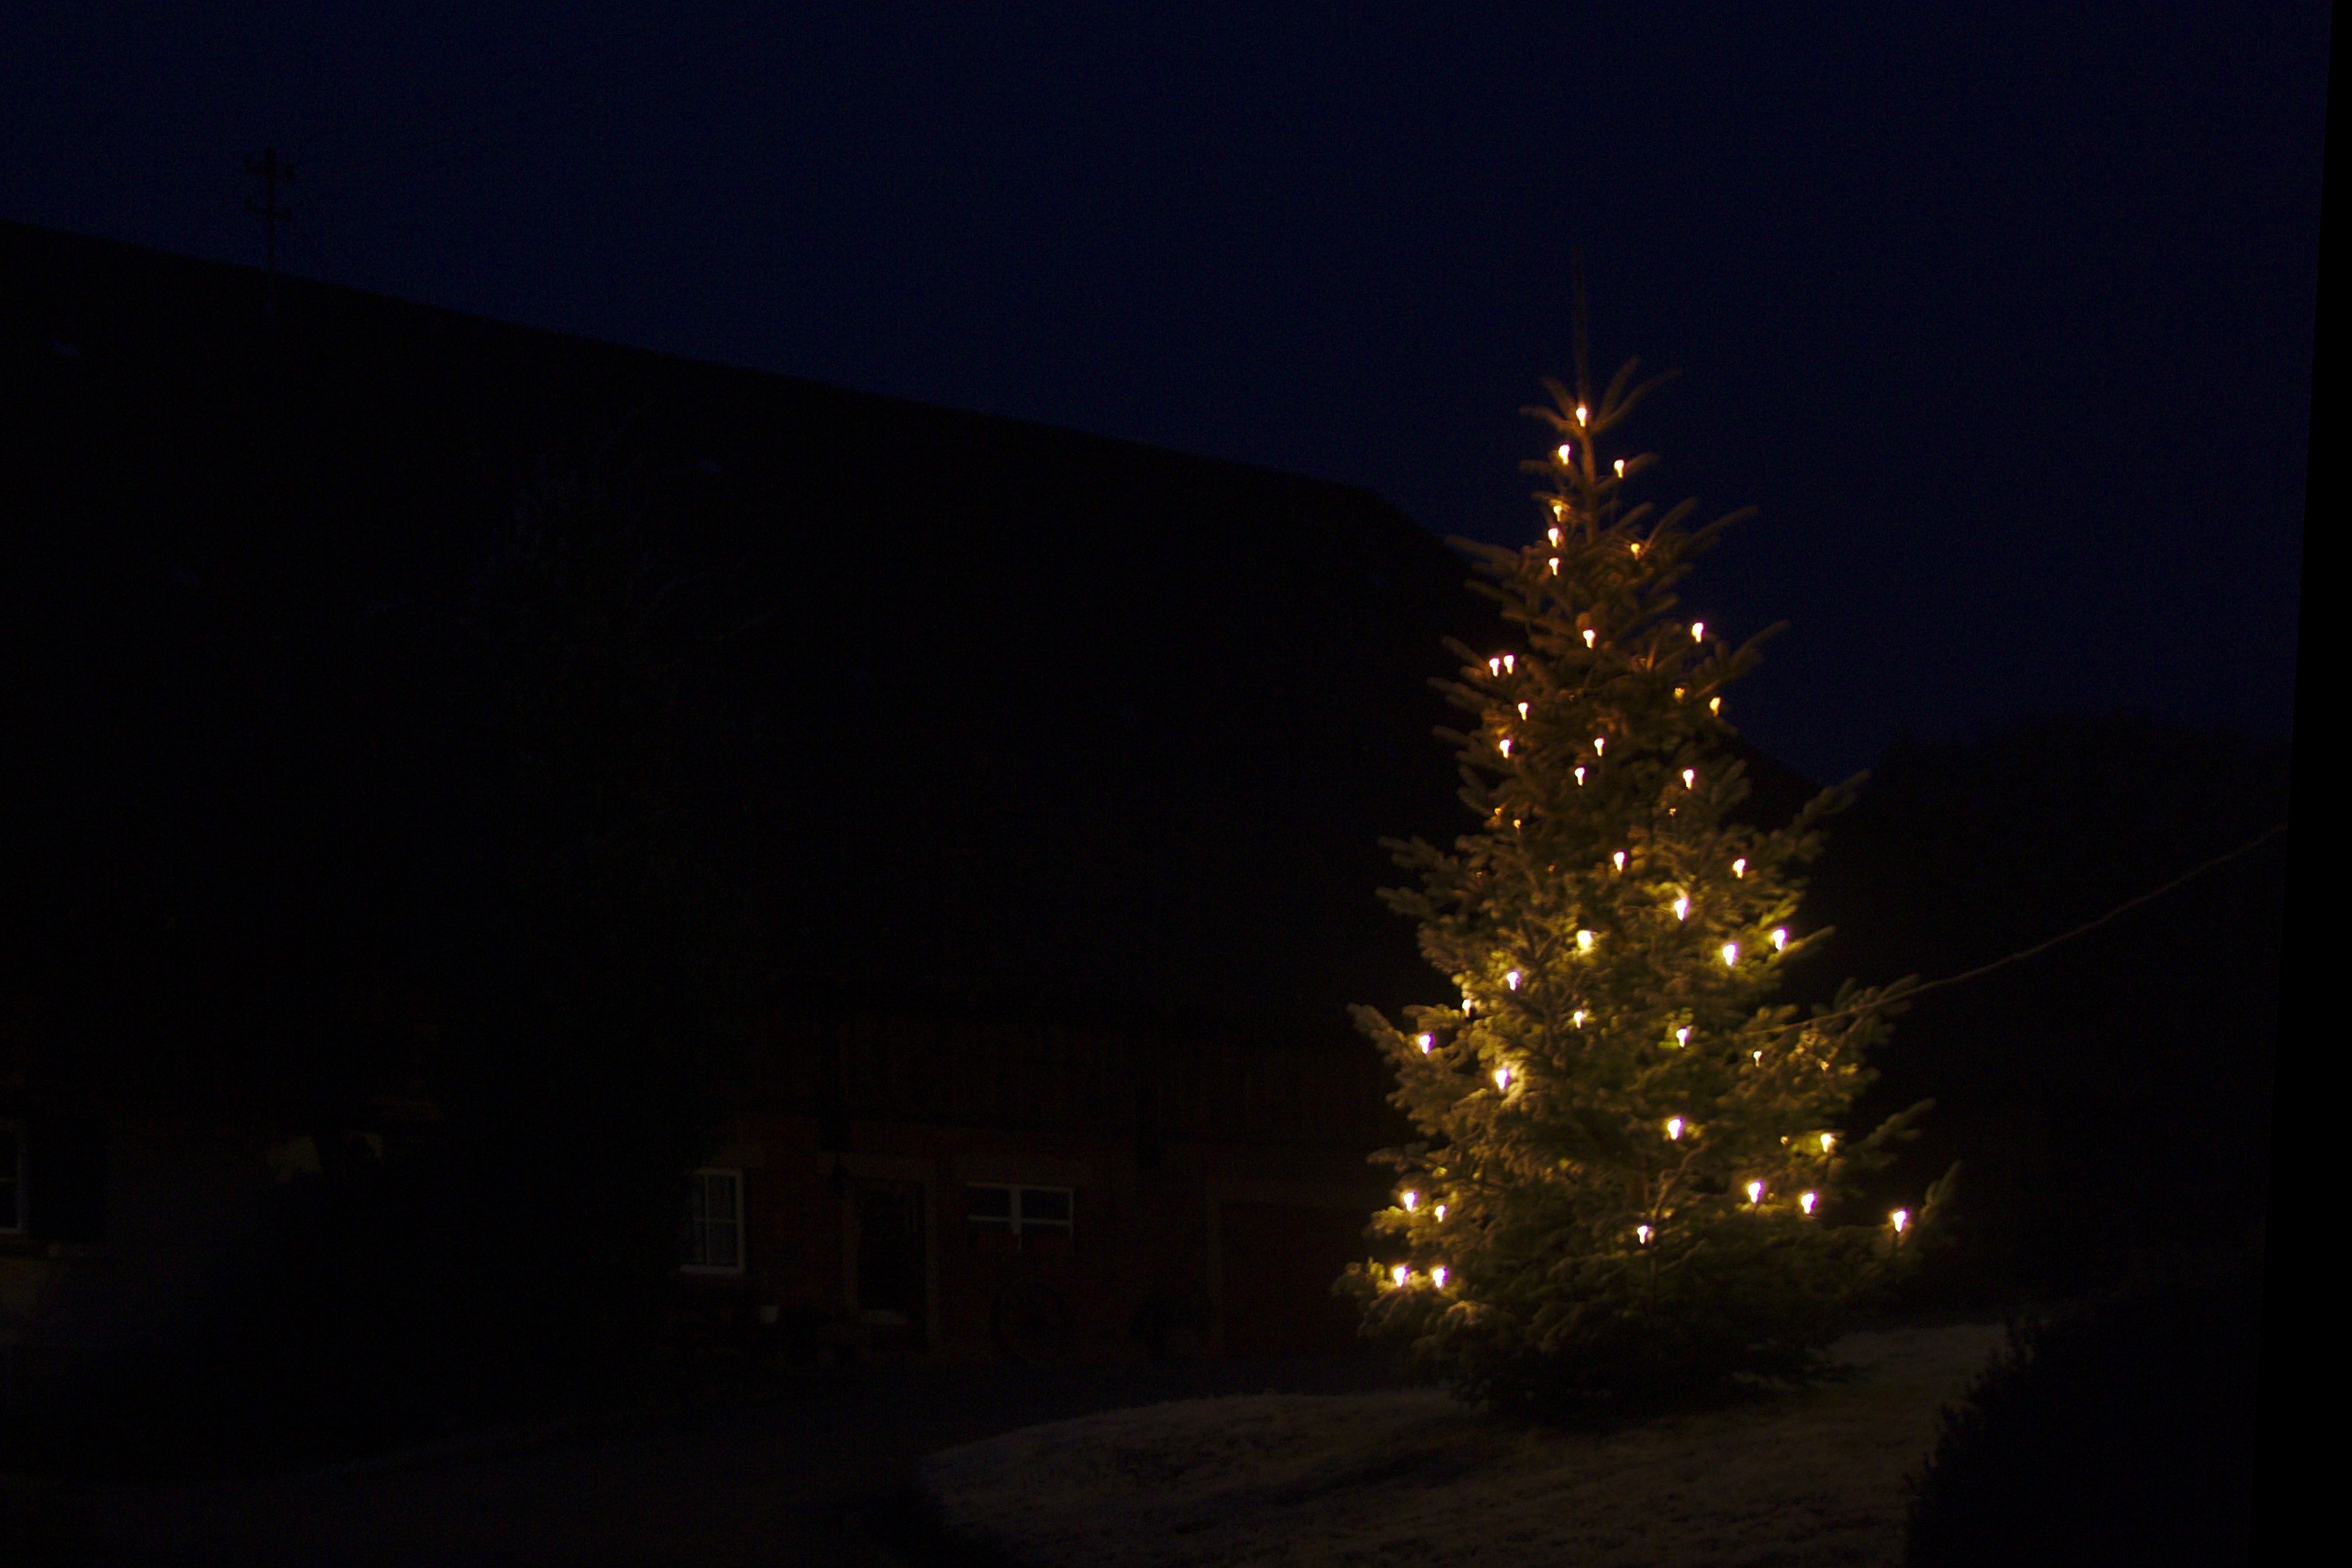 Lighted Christmas tree C.Engelhardt2016